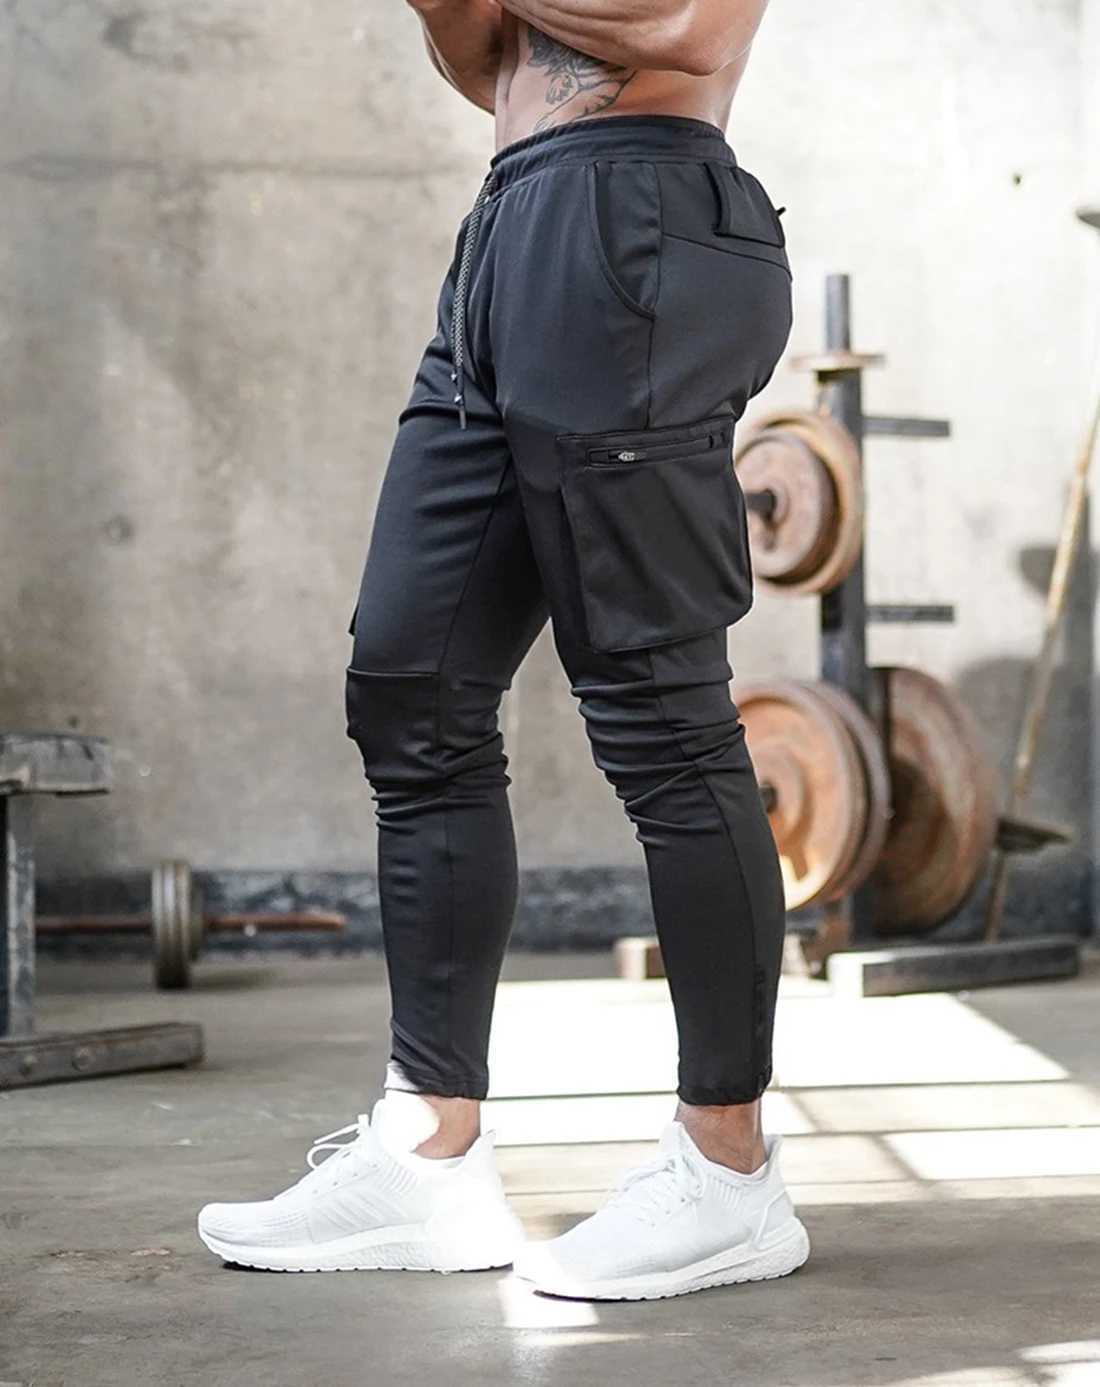 Calça masculina masculino escuro leggings correndo calças de jogging joggers strtwear calças de vários bolsos esportivos de treinamento de baixo